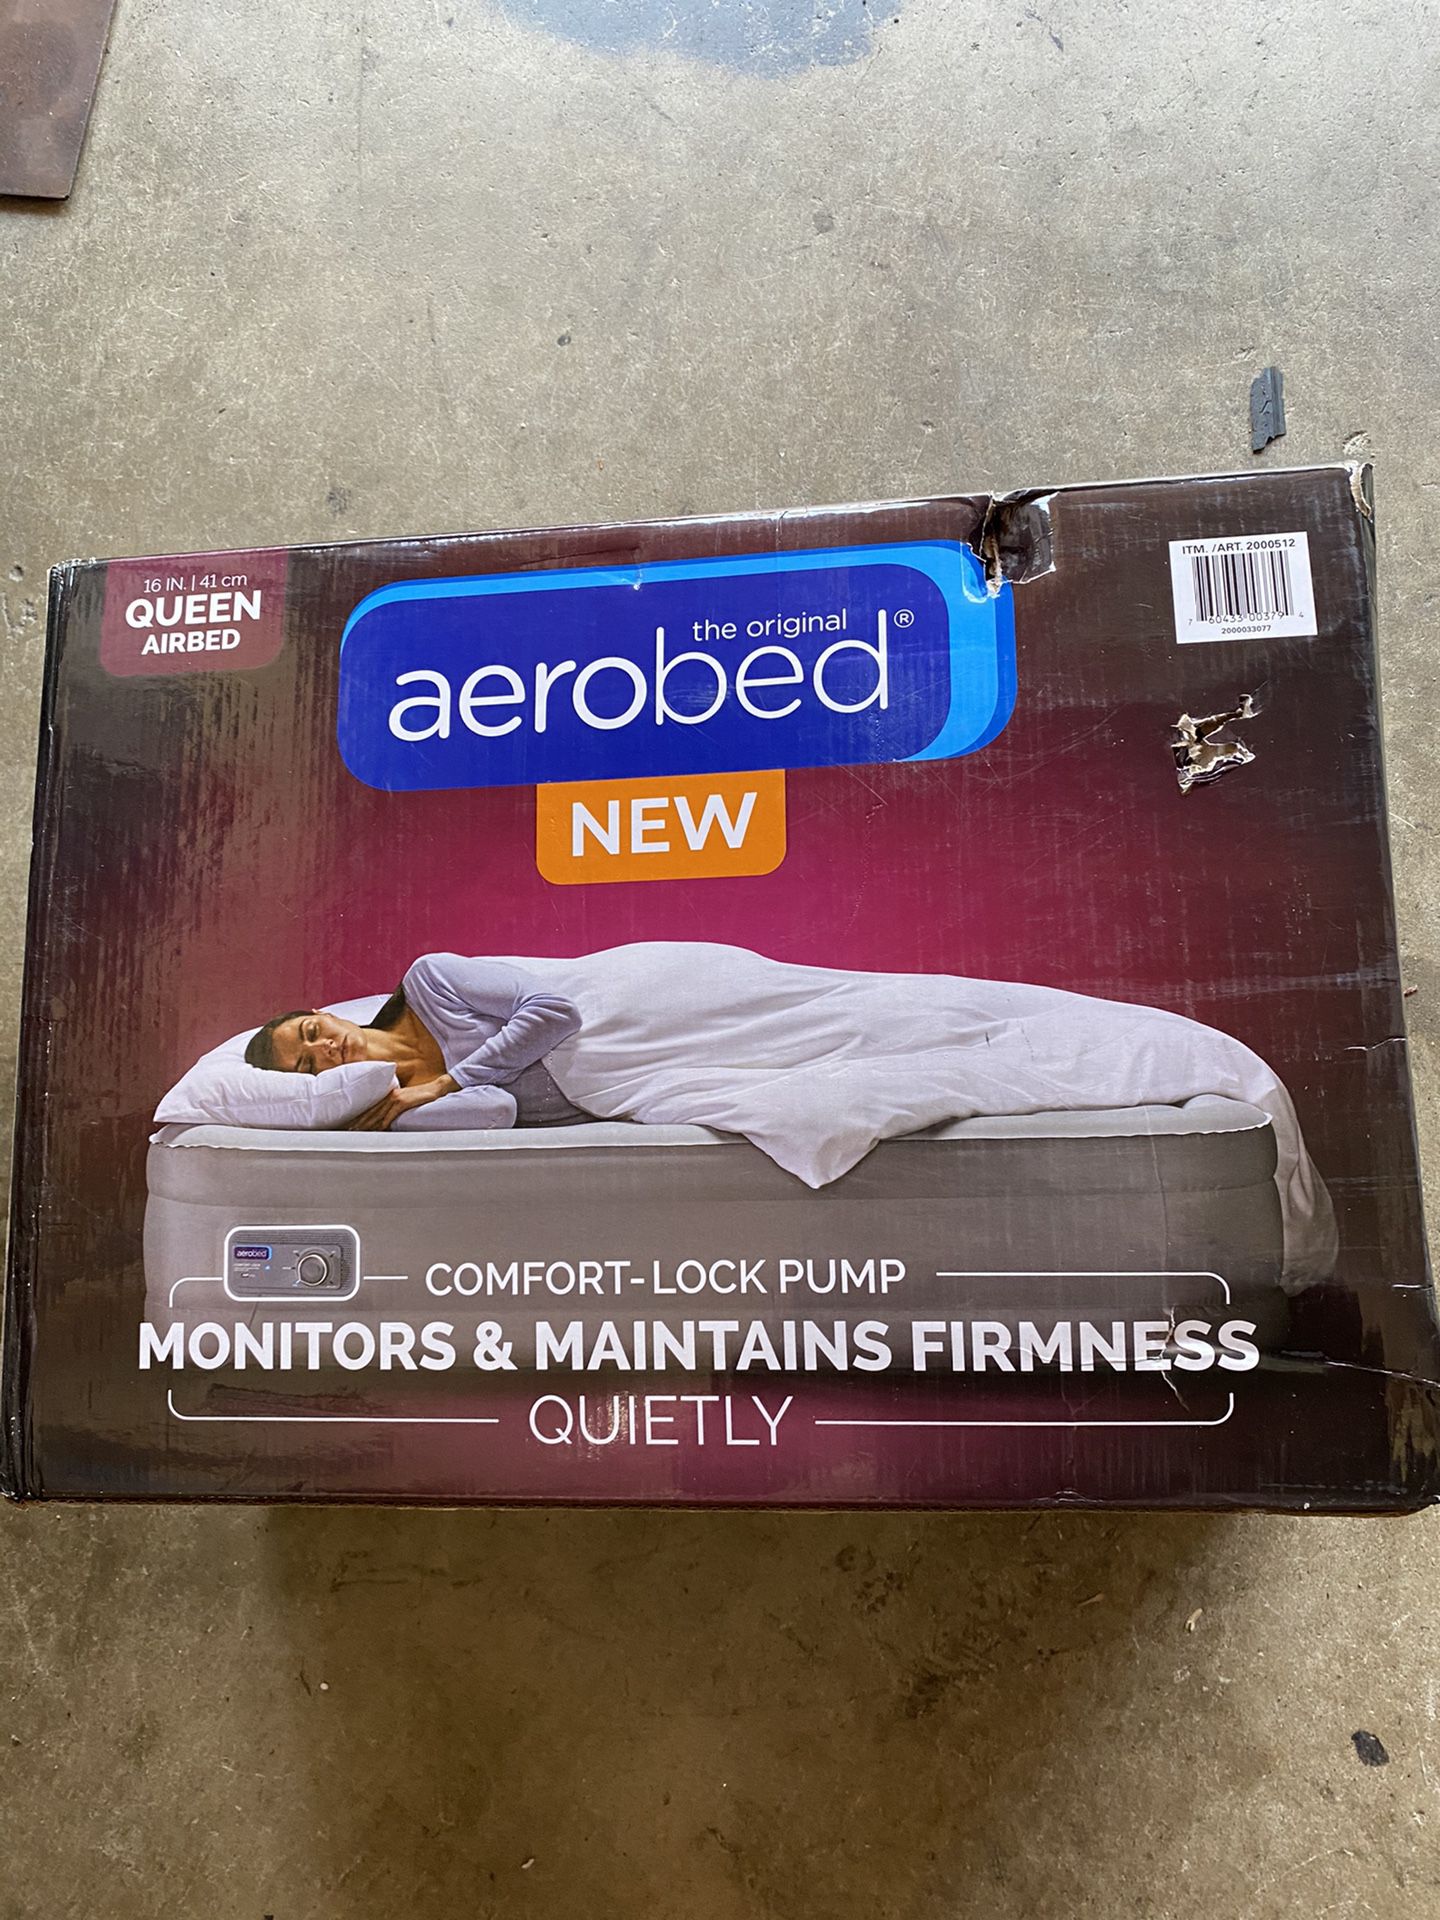 New Queen air mattress worth $149